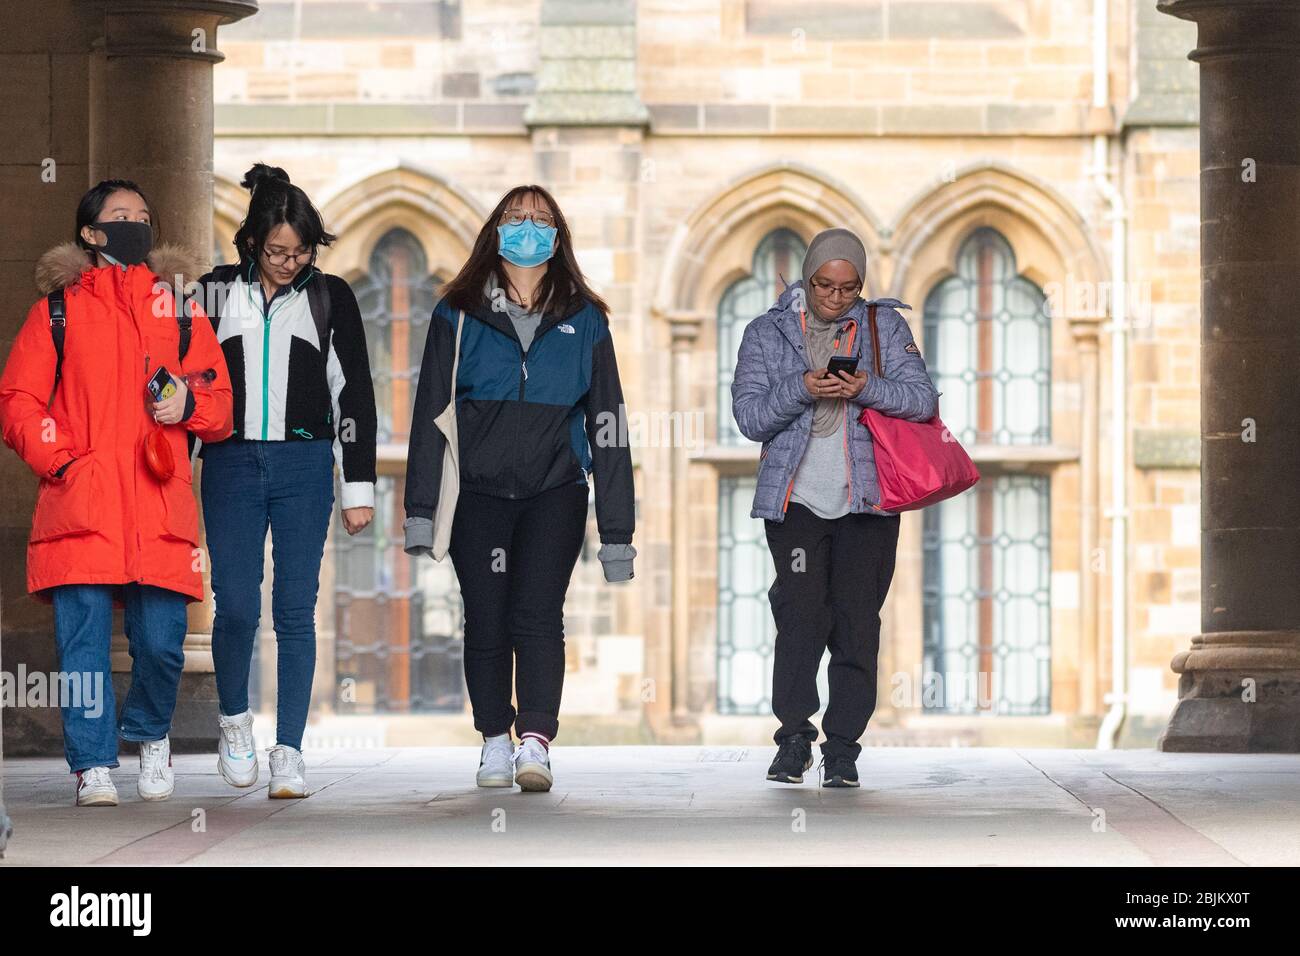 Glasgow university students wearing face masks during the coronavirus pandemic, Scotland UK Stock Photo